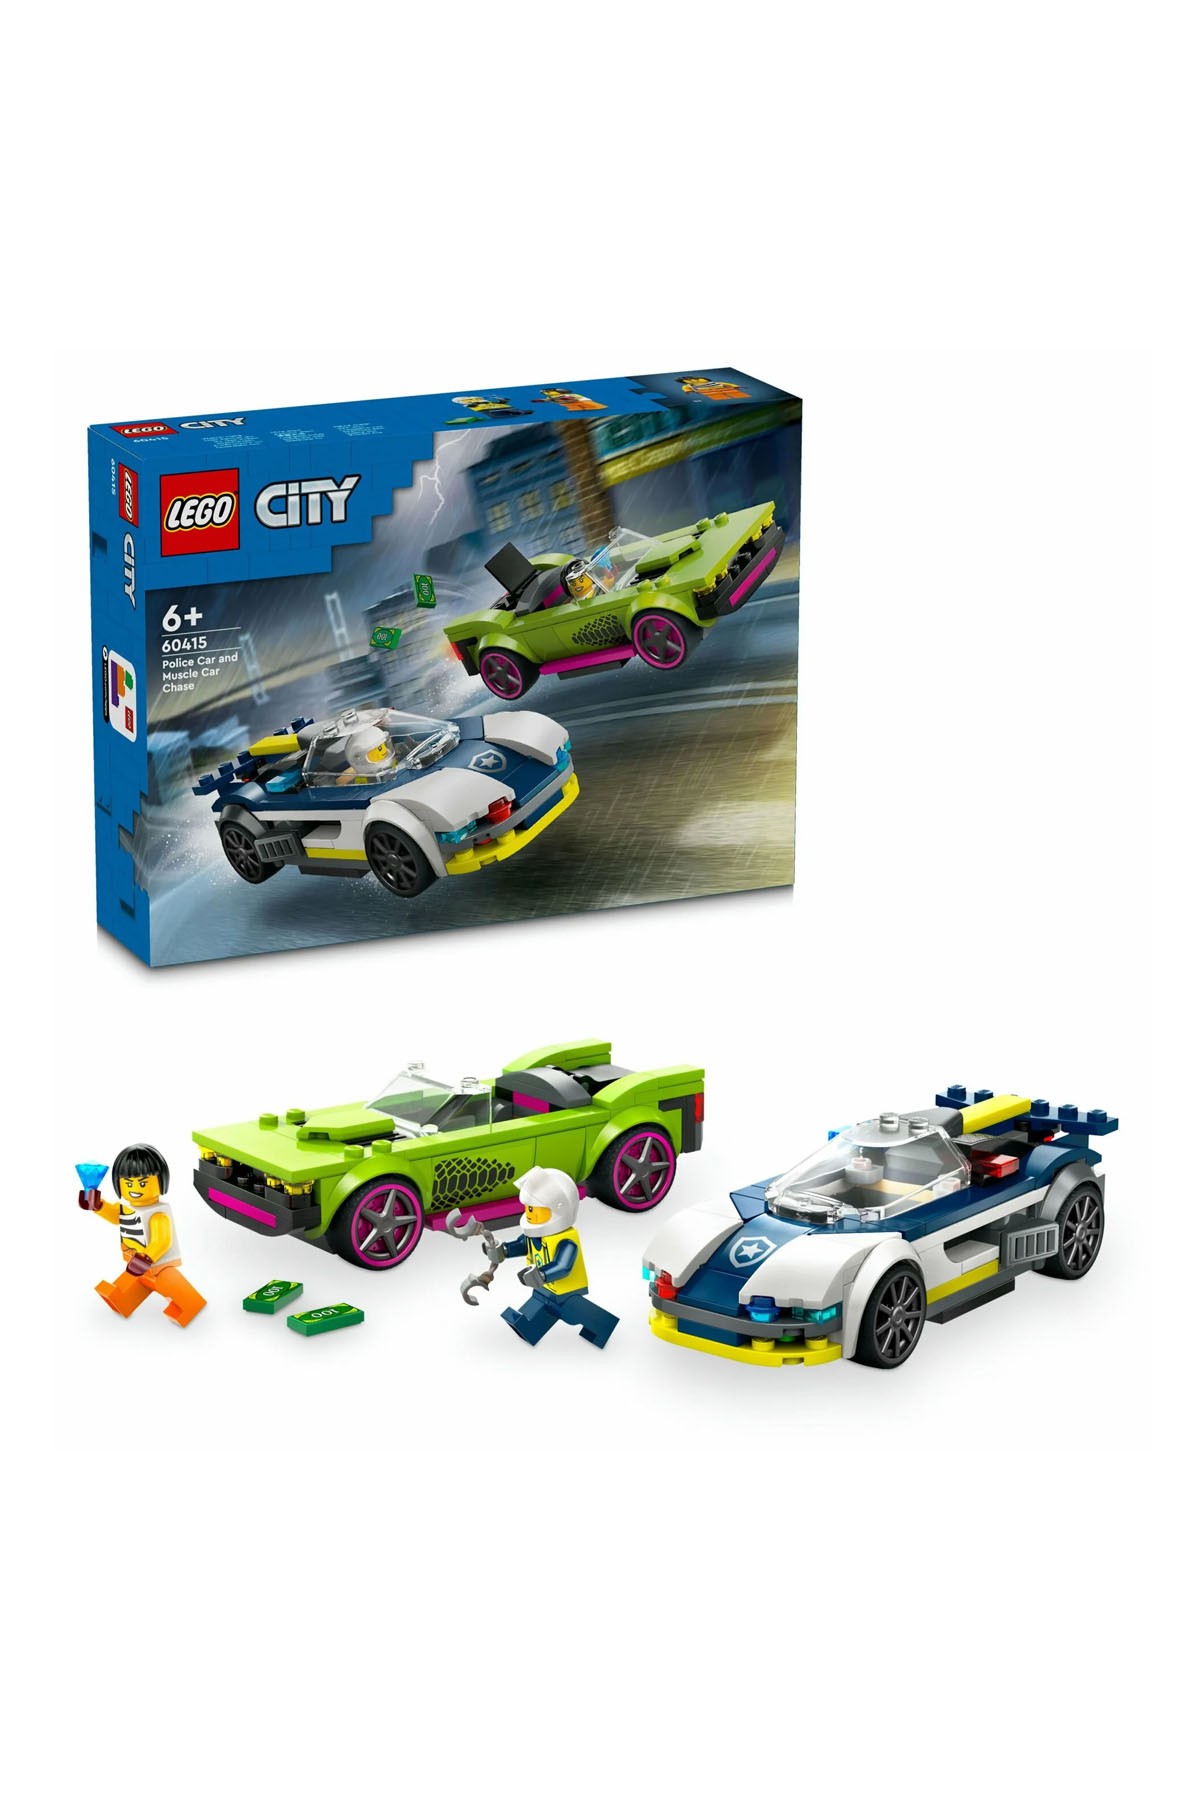 Lego City Polis Arabası ve Spor Araba Takibi 60415